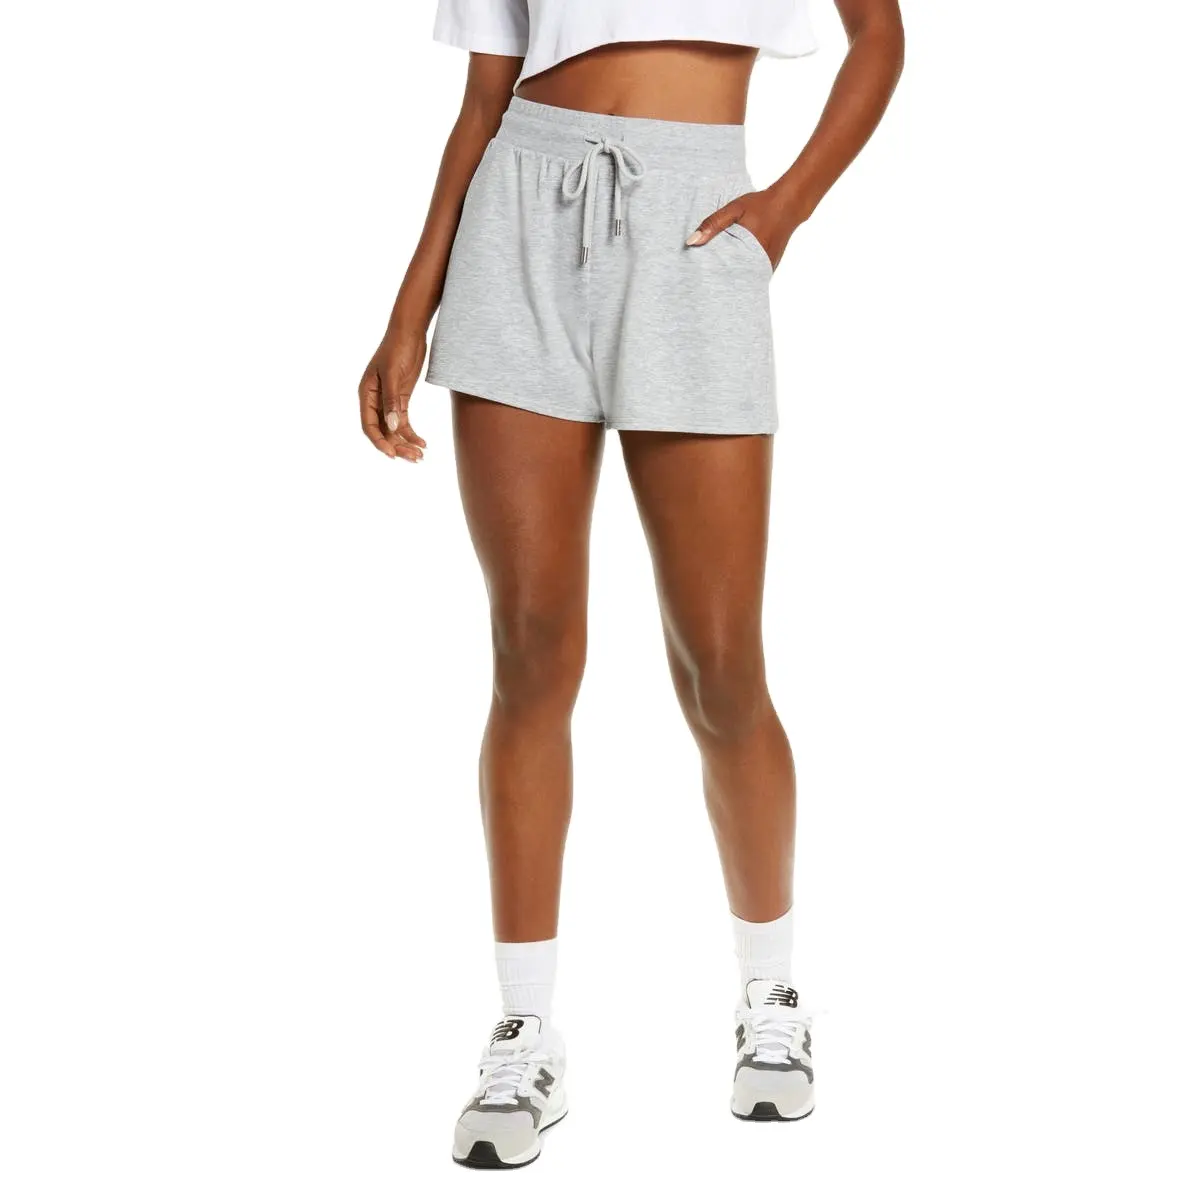 Hochwertige benutzer definierte Frauen Damen Schweiß absorbierende Kompression Laufs horts Fitness studio Sport Atmungsaktive Frauen Yoga Shorts